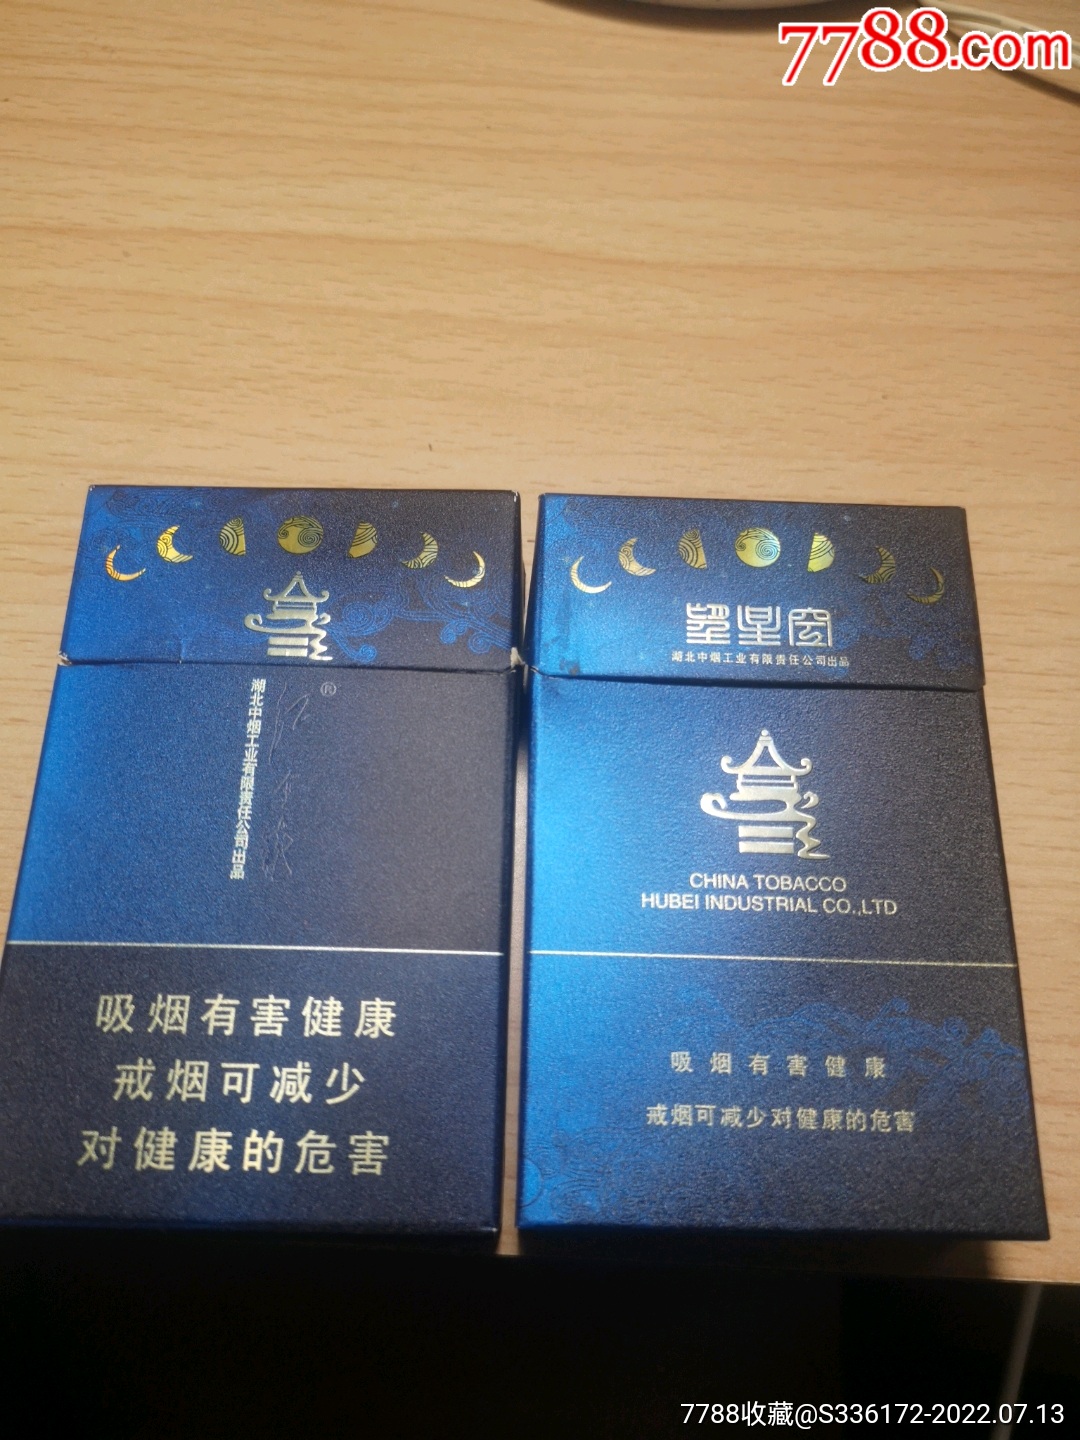 红金龙（晓楼·禧） - 香烟品鉴 - 烟悦网论坛